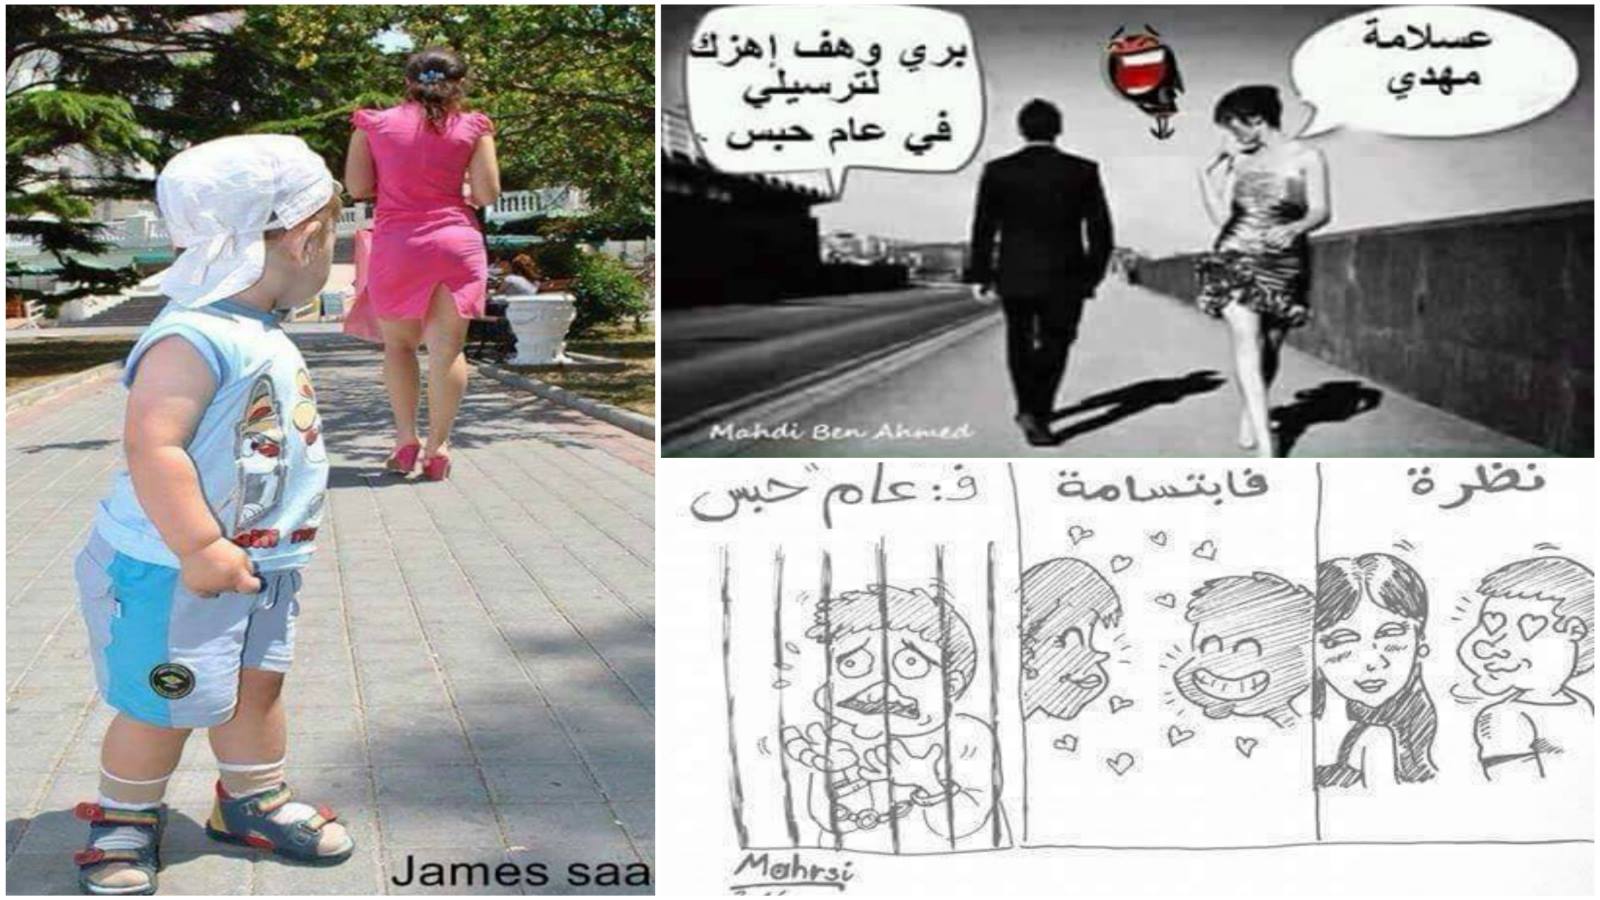 قانون التحرش في تونس: "محلى عينيكِ=6 أشهر حبس"!